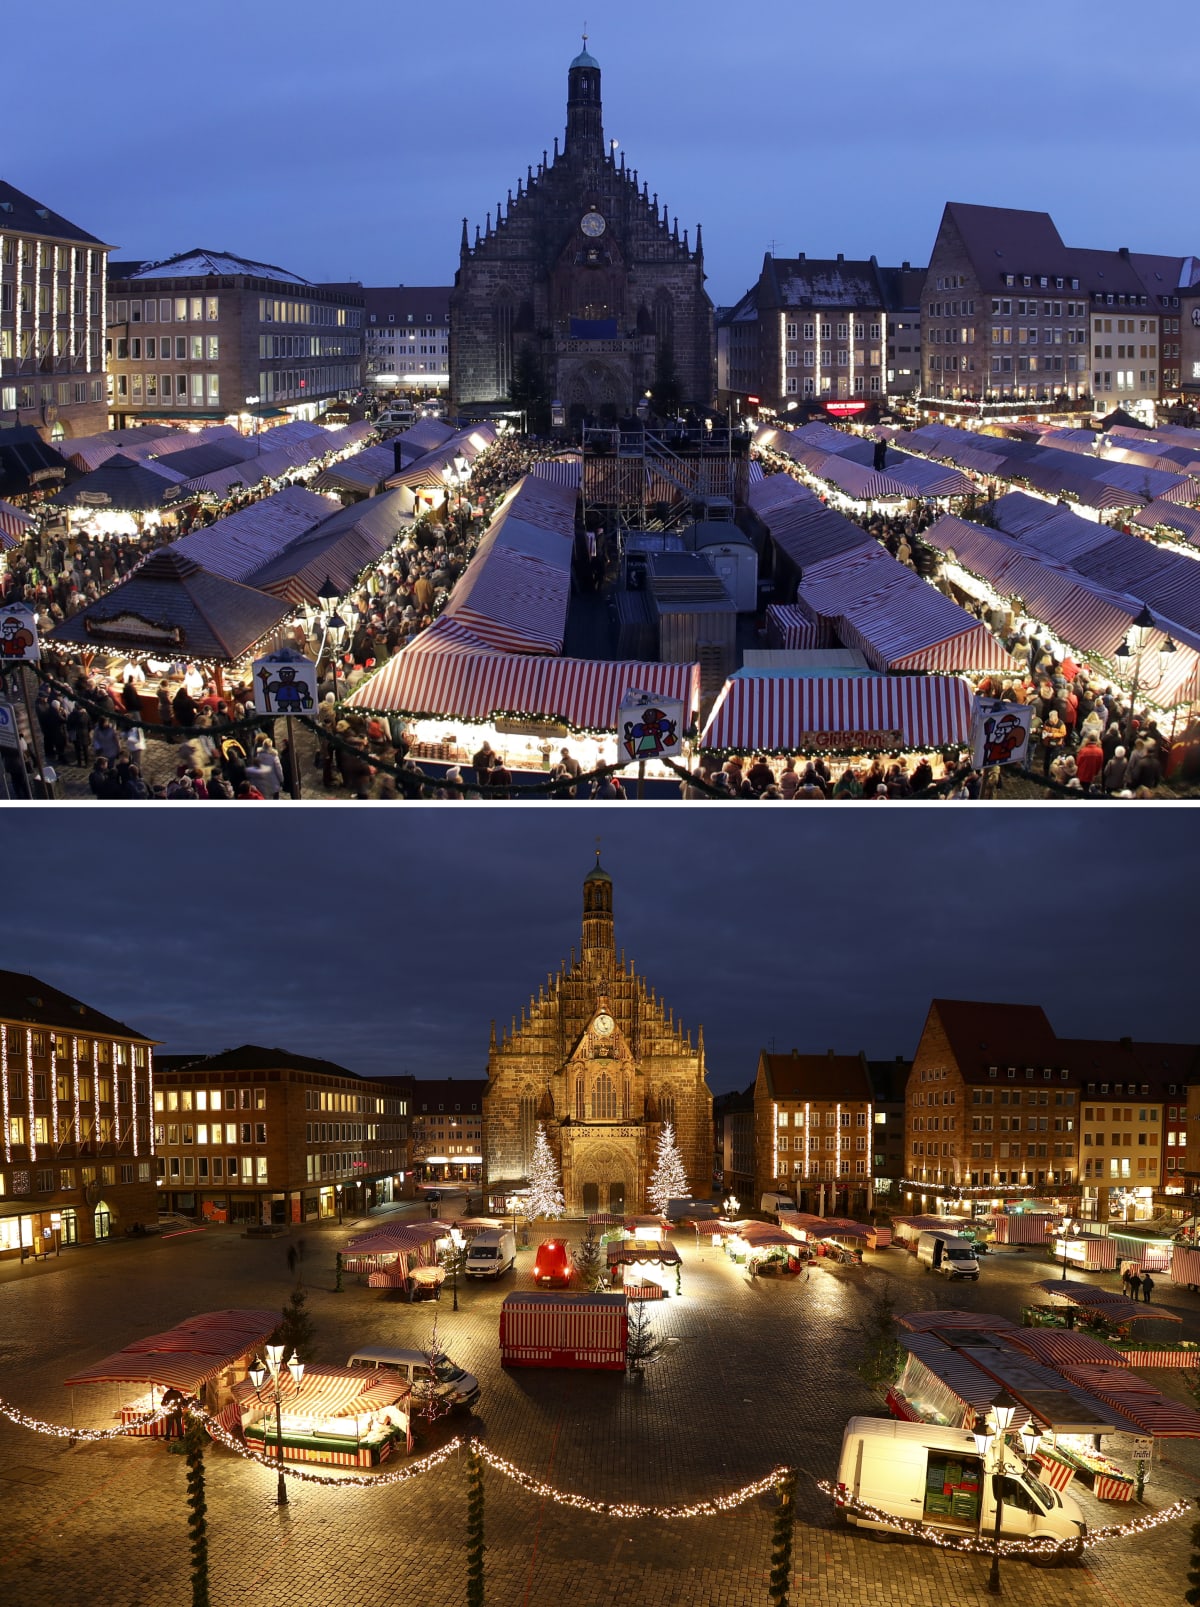 Vánoční trhy v Norimberku v Německu každoročně lákají nespočet turistů. Letos však náměstí zeje spíše prázdnotou.